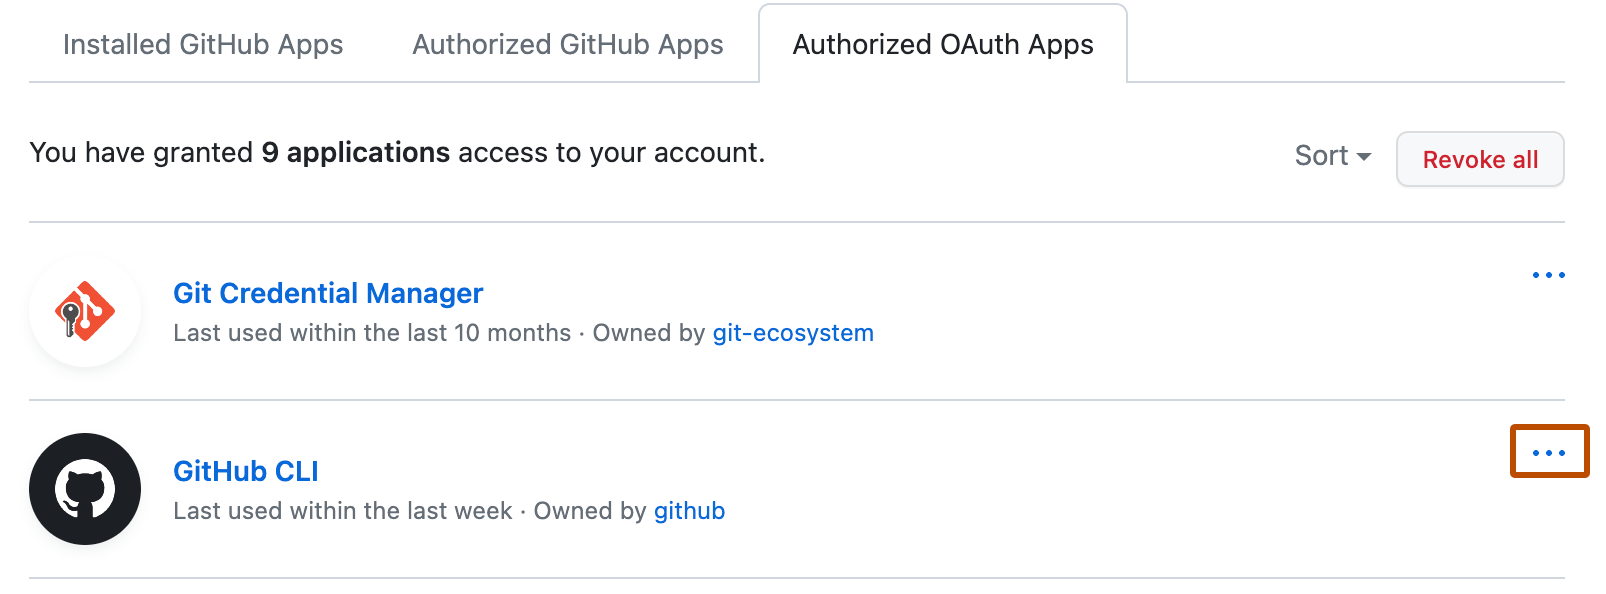 Список авторизованных приложений OAuth Apps